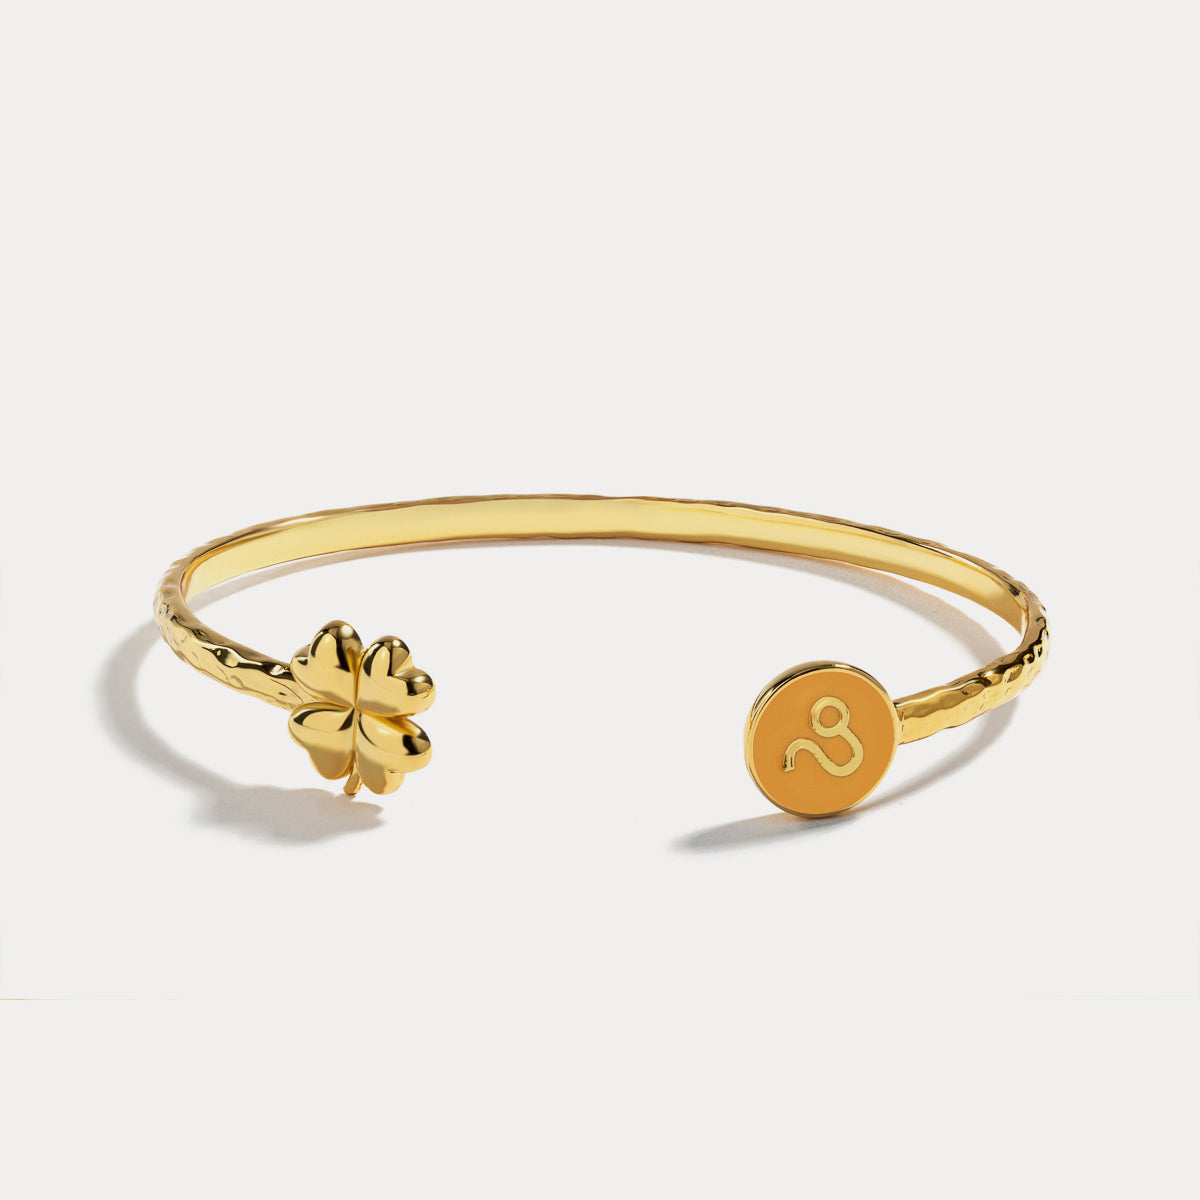 Leo astrological sign bracelet